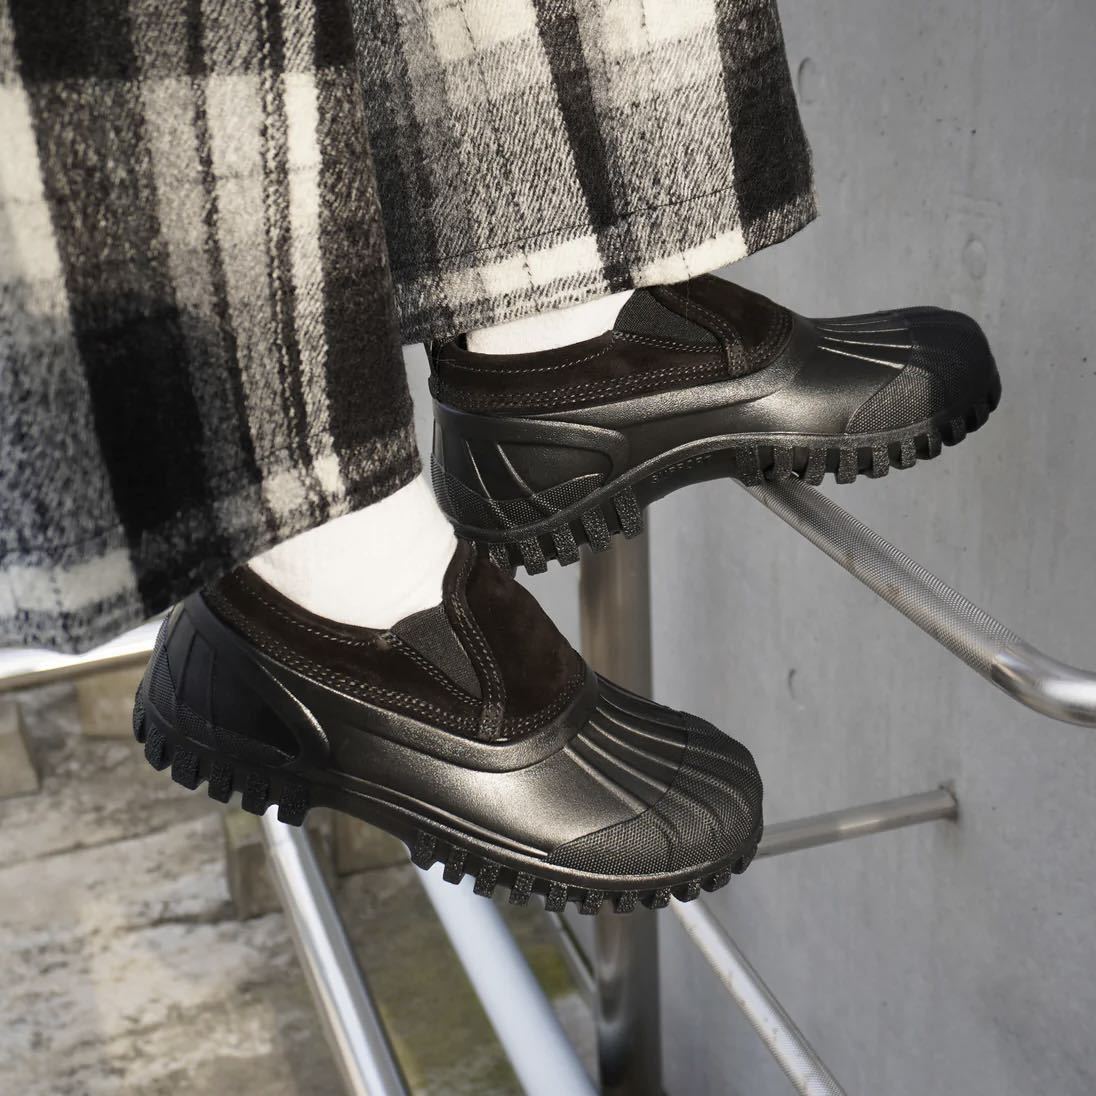  новый товар Италия производства DIEMMEtiemeBALBI BASSO SUEDE замша туфли без застежки обувь 43.3.74 десять тысяч чёрный мужской ботинки дождь снег 27.5. бесплатная доставка 